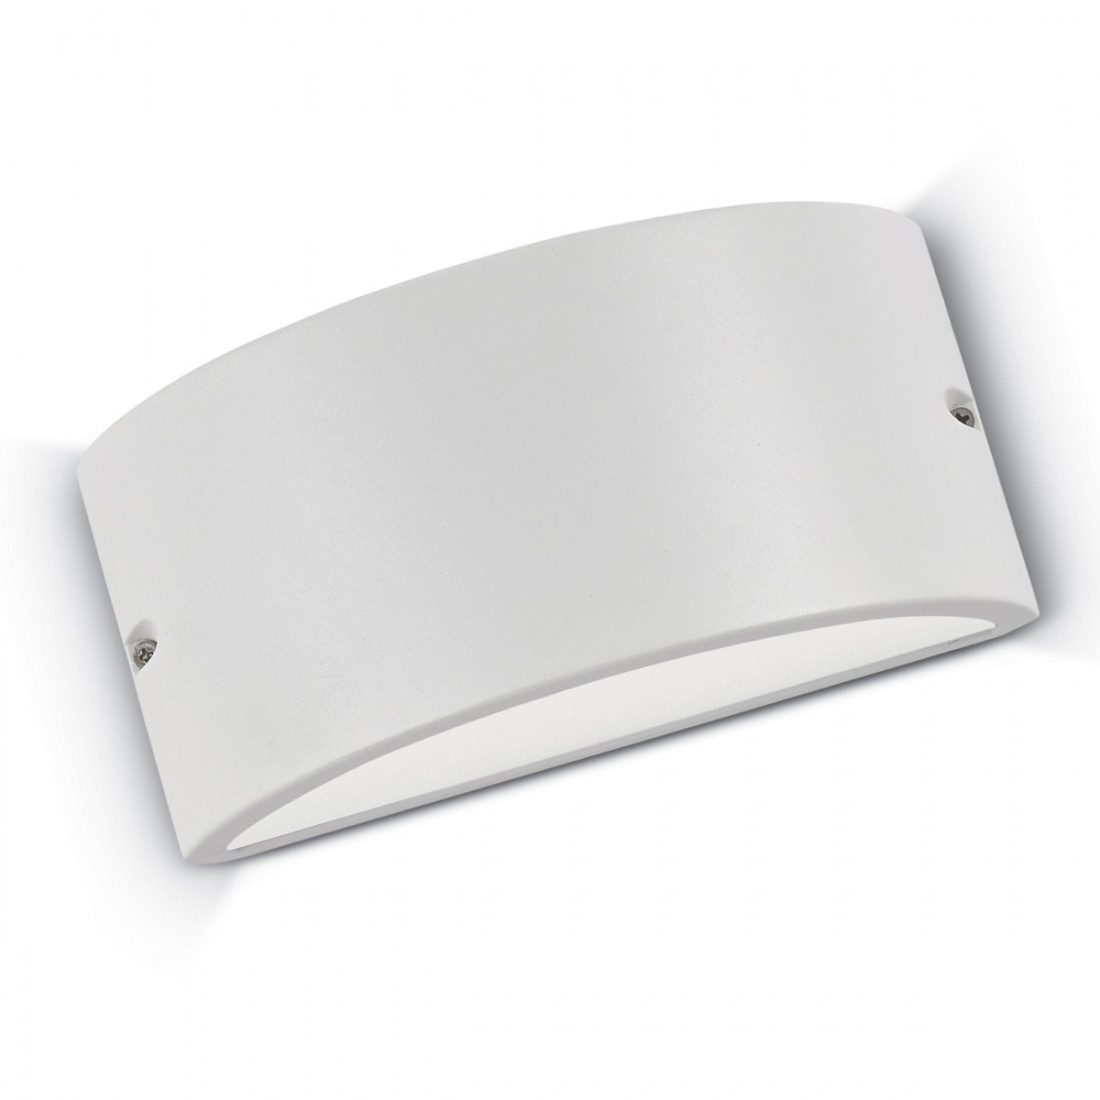 Applique ID-REX 2 AP1 E27 LED IP44 alluminio antracite bianco acrilico lampada parete moderna fascia biemissione esterno